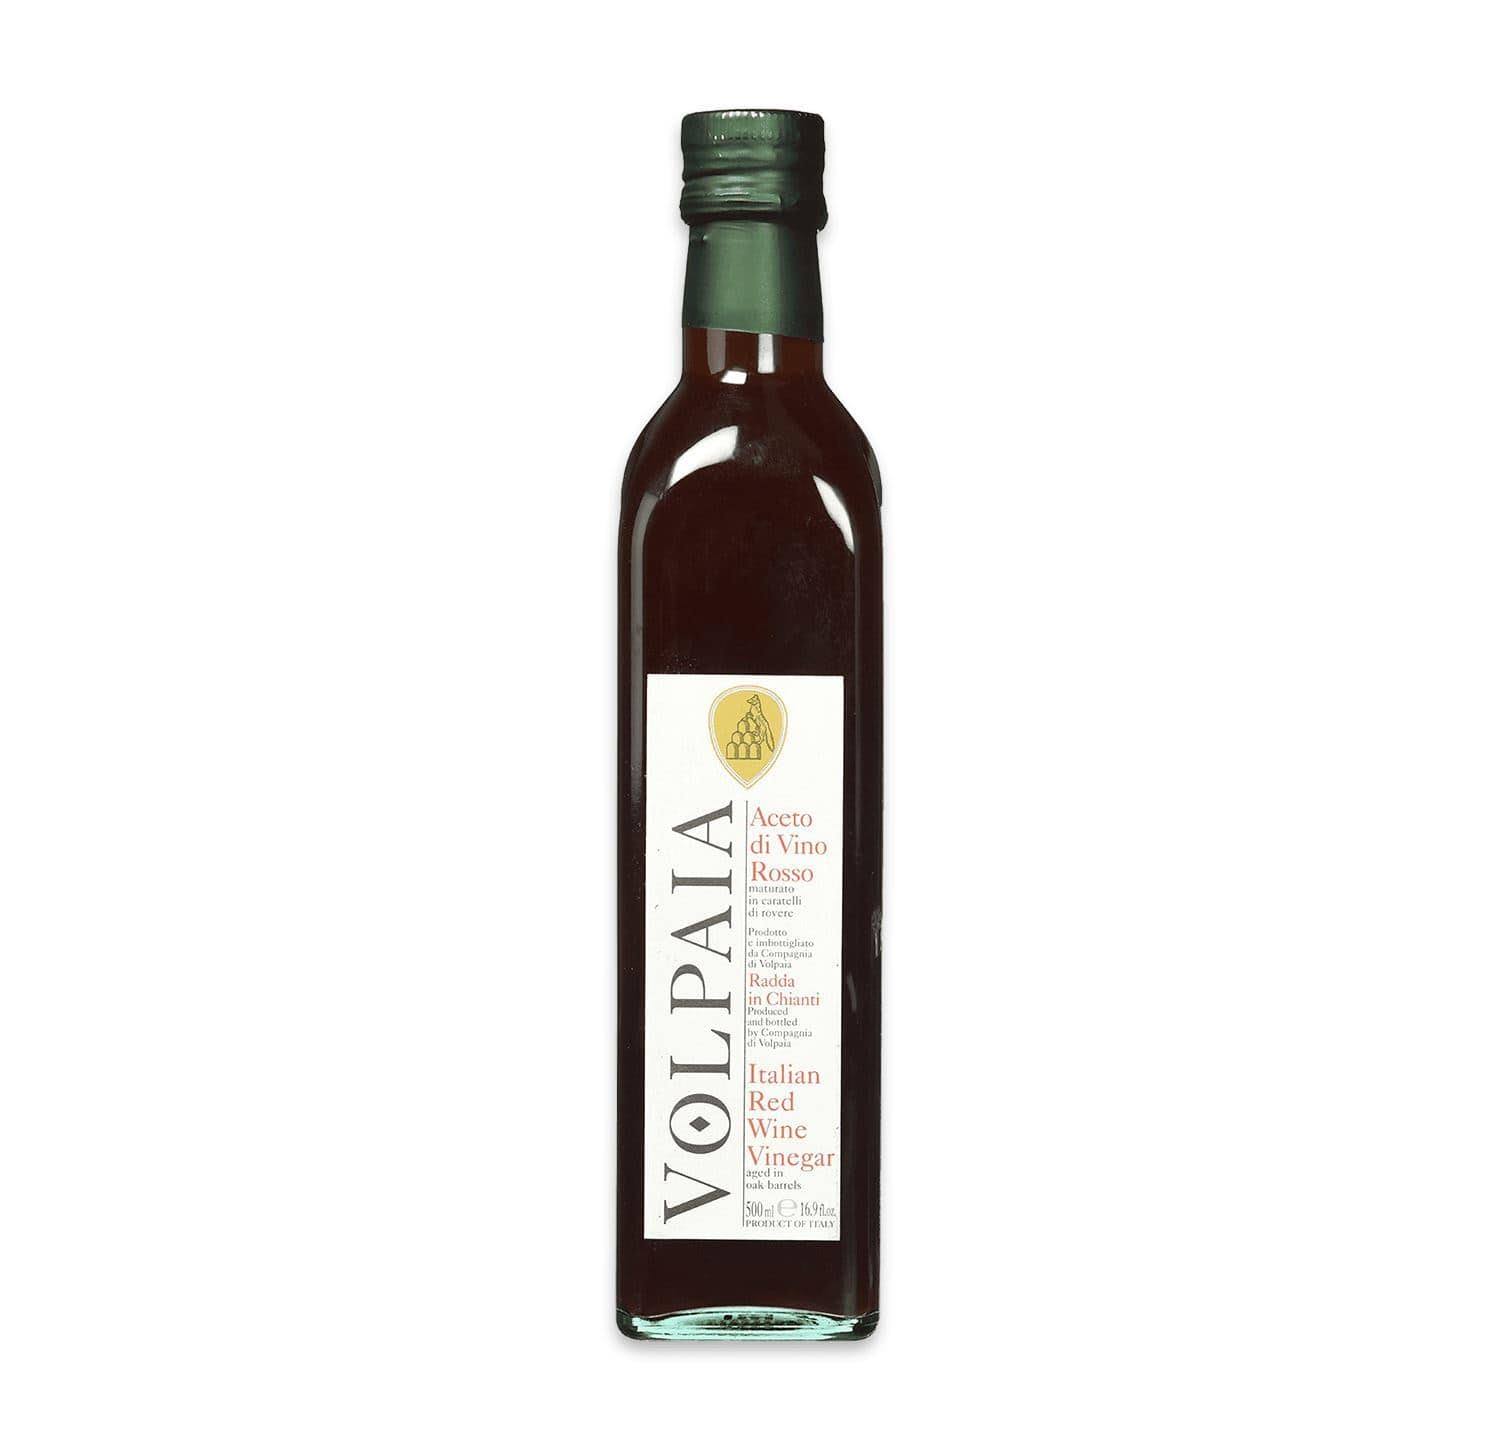 Castello Di Volpaia Aged Italian Red Wine Vinegar - 250 ml bottle